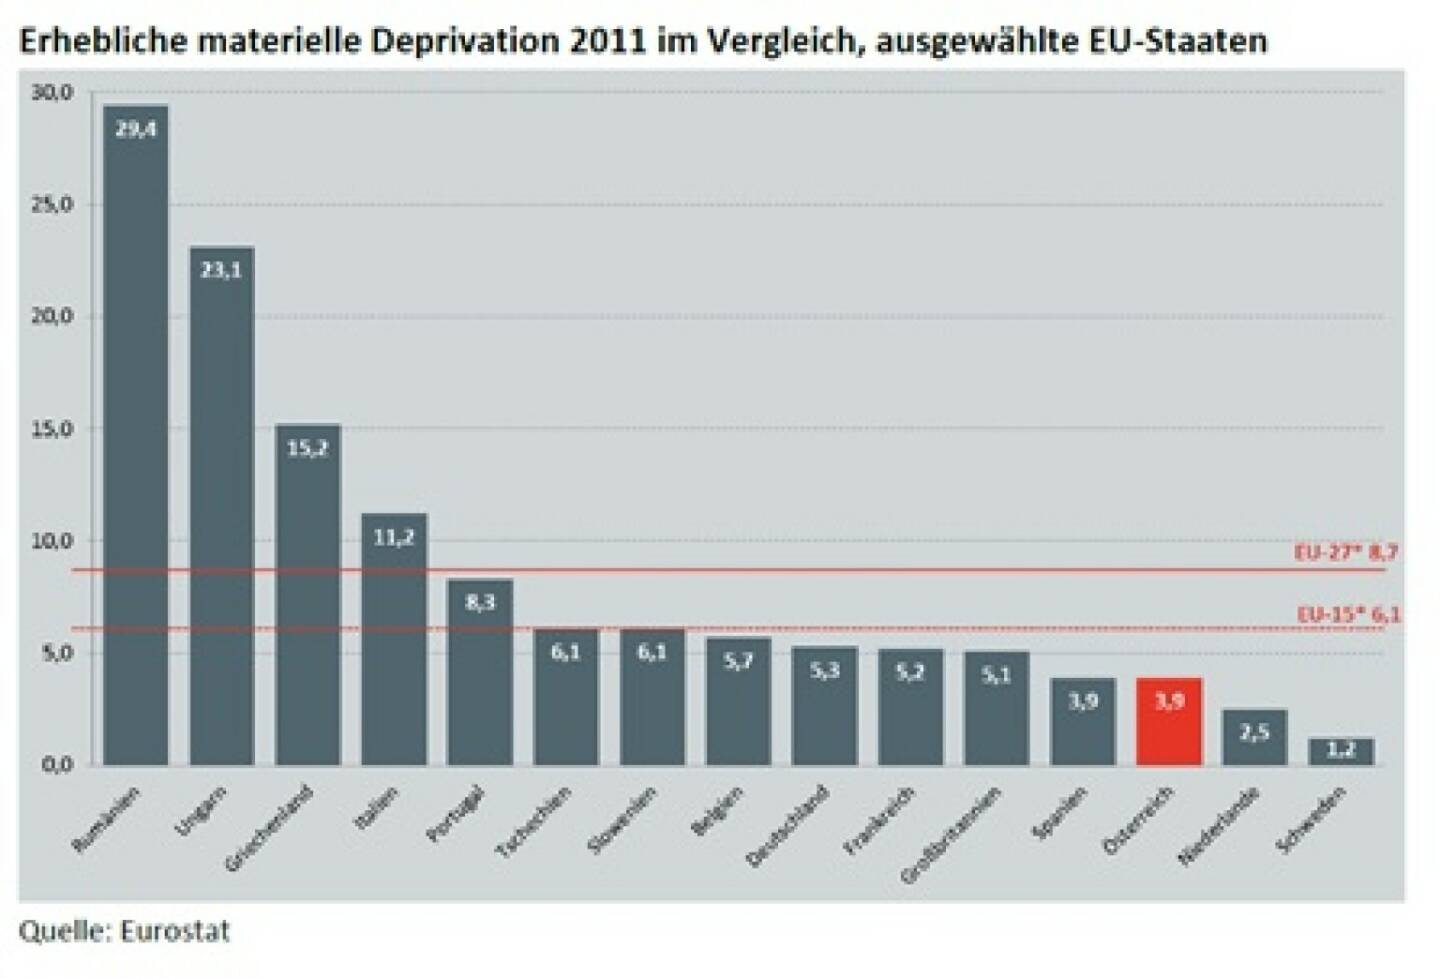 „Materiell Deprivierte“: In 5 Jahren -50% Waren 2008 noch 6,4% der Österreicher materiell depriviert („wirklich arm“, nach EU-Definition), so waren es 2010 nur mehr 4,3%, 2011 gar nur mehr 3,9% (c) Eurostat, vgl. http://www.christian-drastil.com/2013/11/15/ist_das_schuren_von_abstiegsangsten_unehrlich_michael_horl